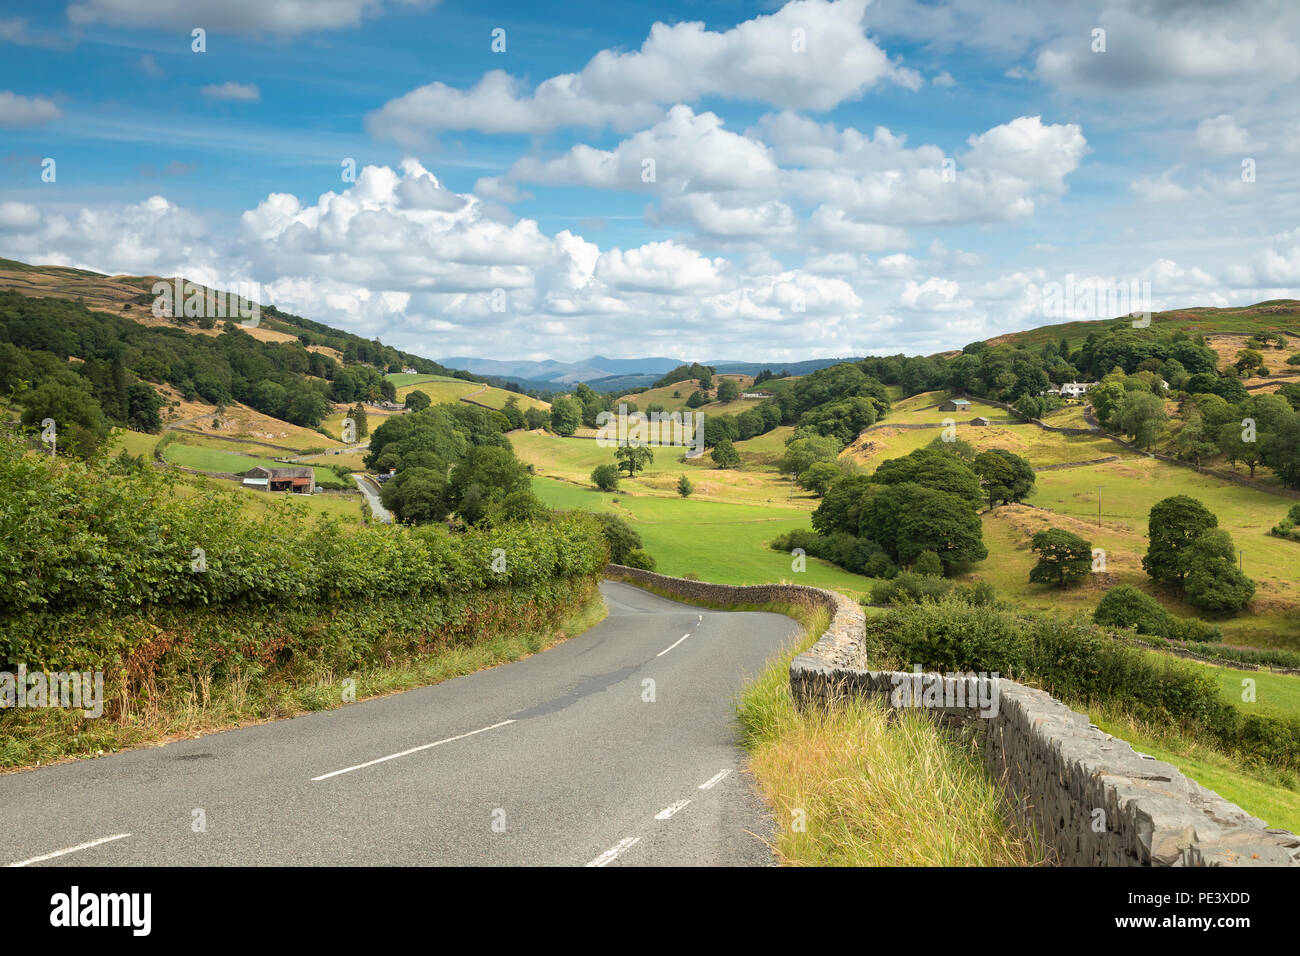 Capture d'une image à partir de la route de la belle campagne de Cumbria, Angleterre, Royaume-Uni. Banque D'Images